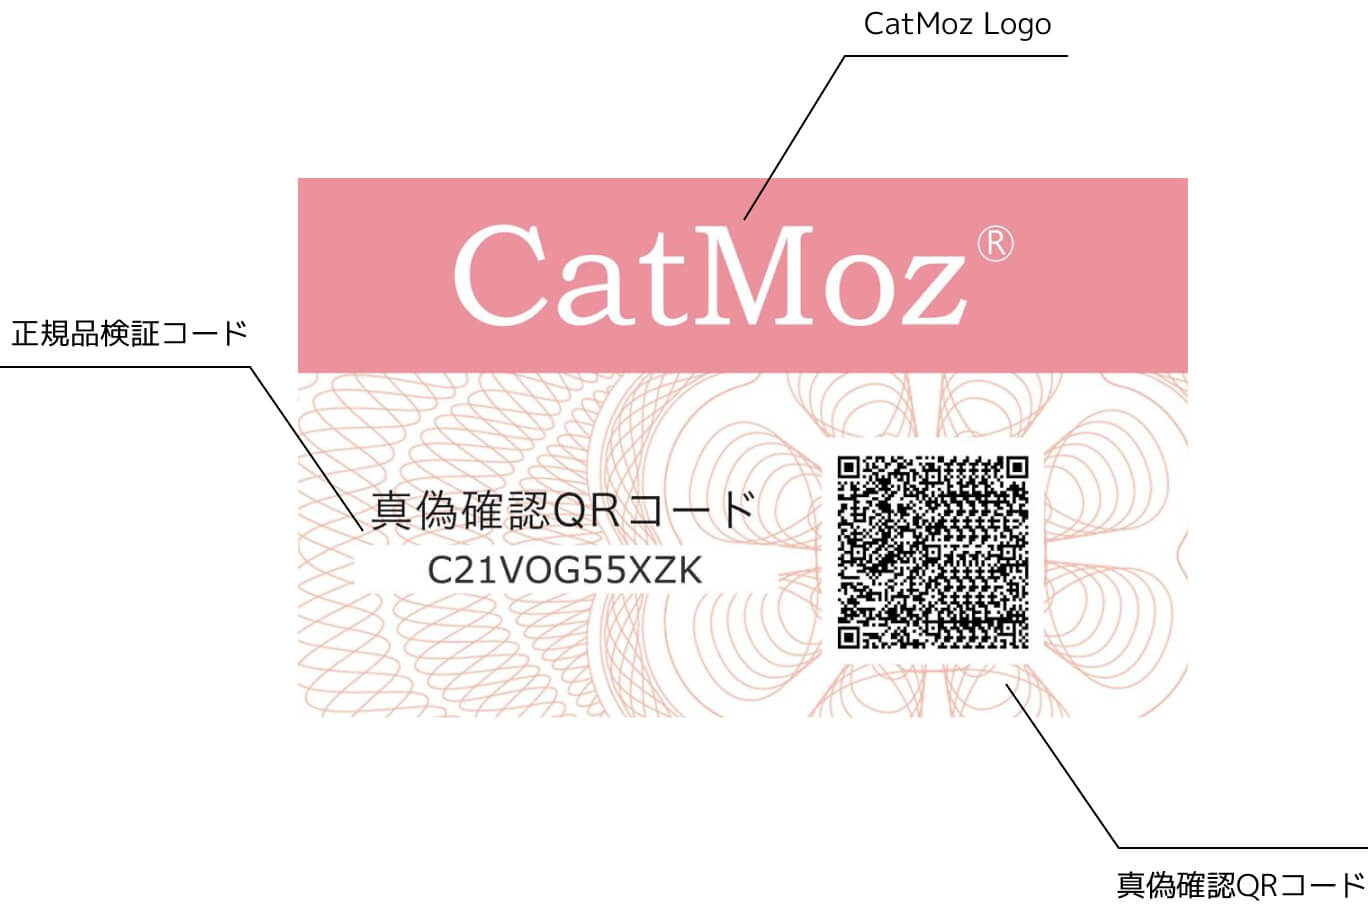 CatMoz（キャットモズ⁠）の各製品には、左記のような偽造防止用の認証カードが同梱されています。